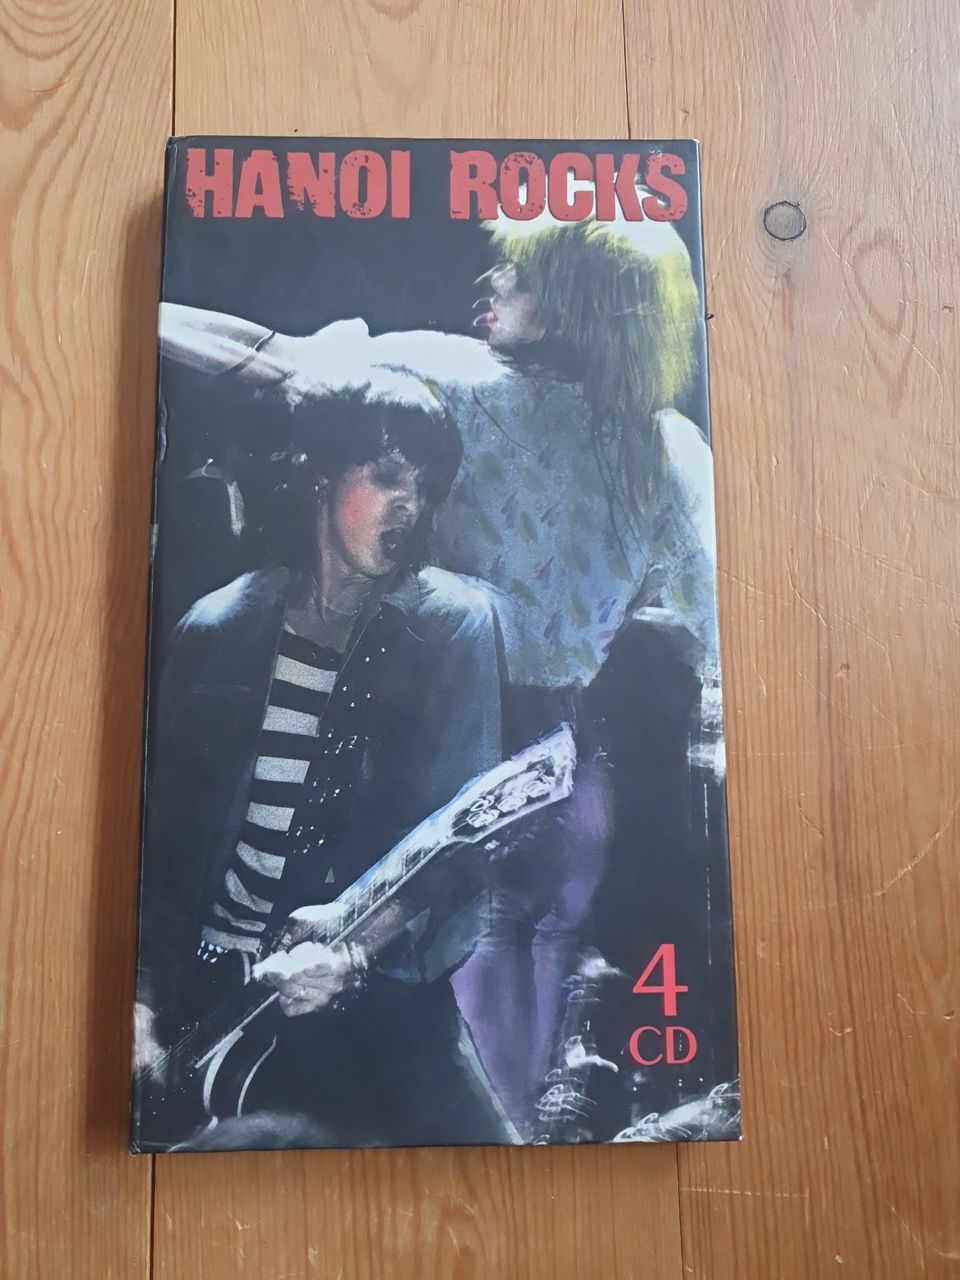 Hanoi Rocks 4 cd:n boxi